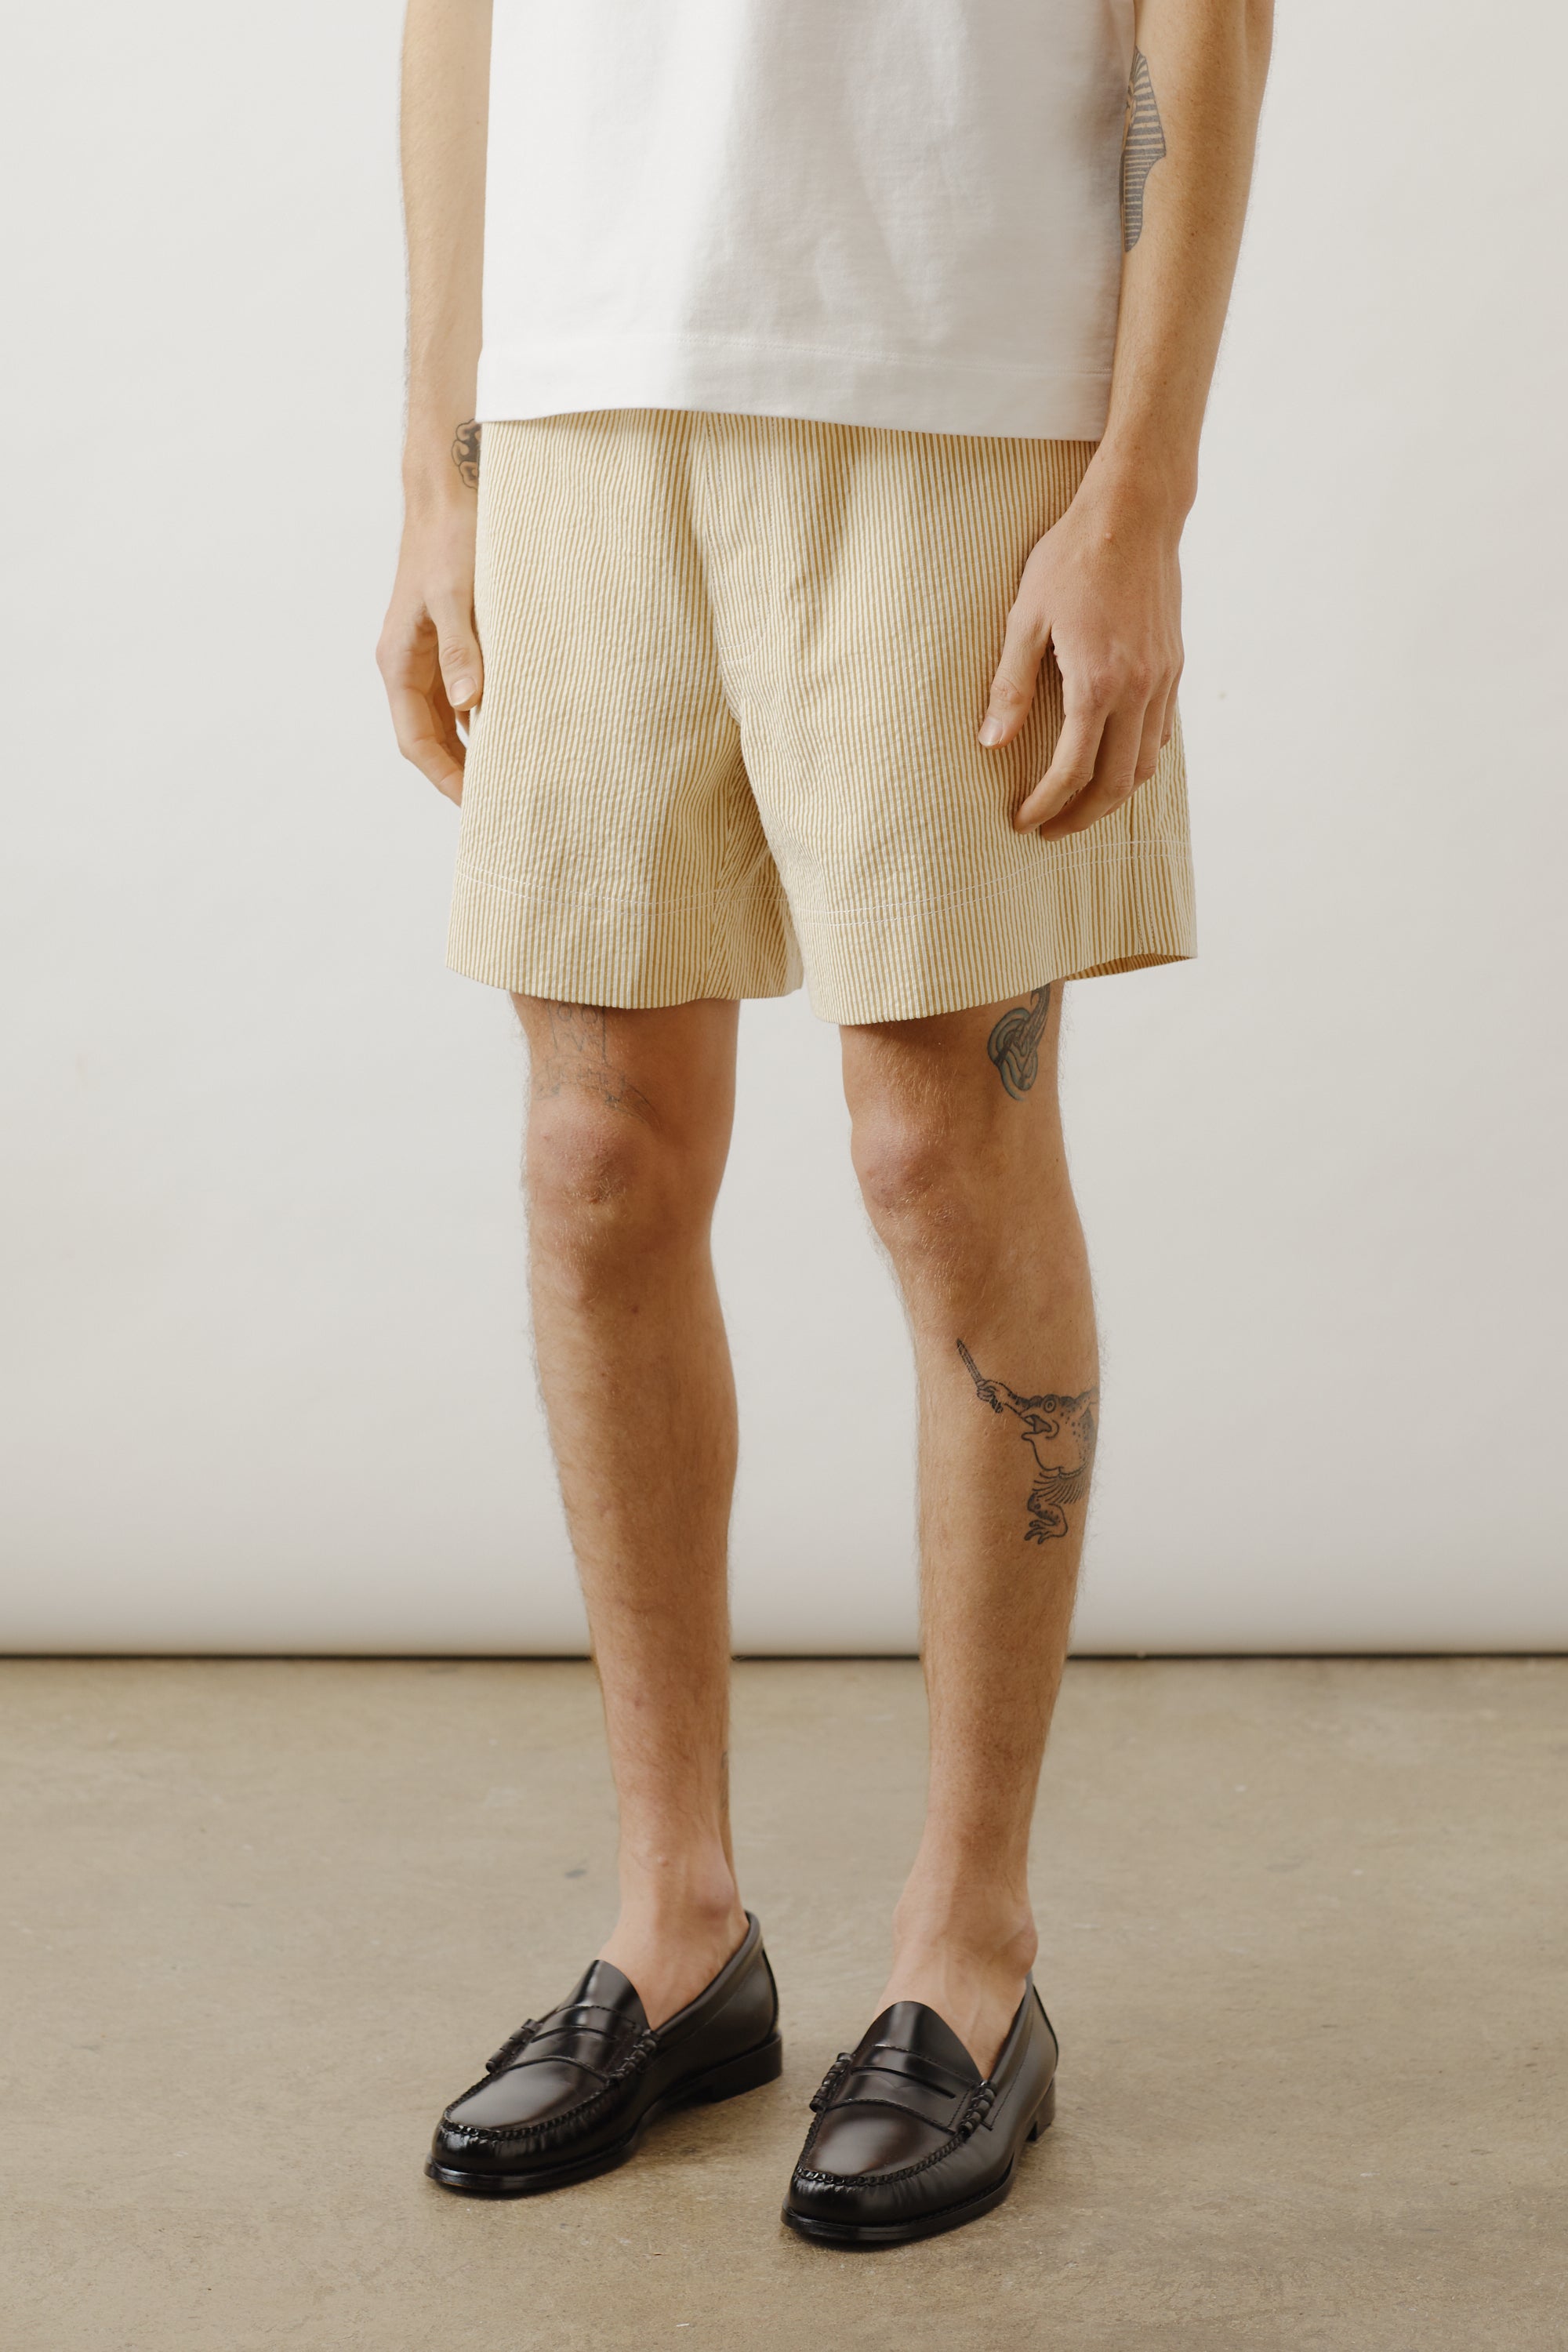 Shorts In Yellow Stripe Cotton Seersucker